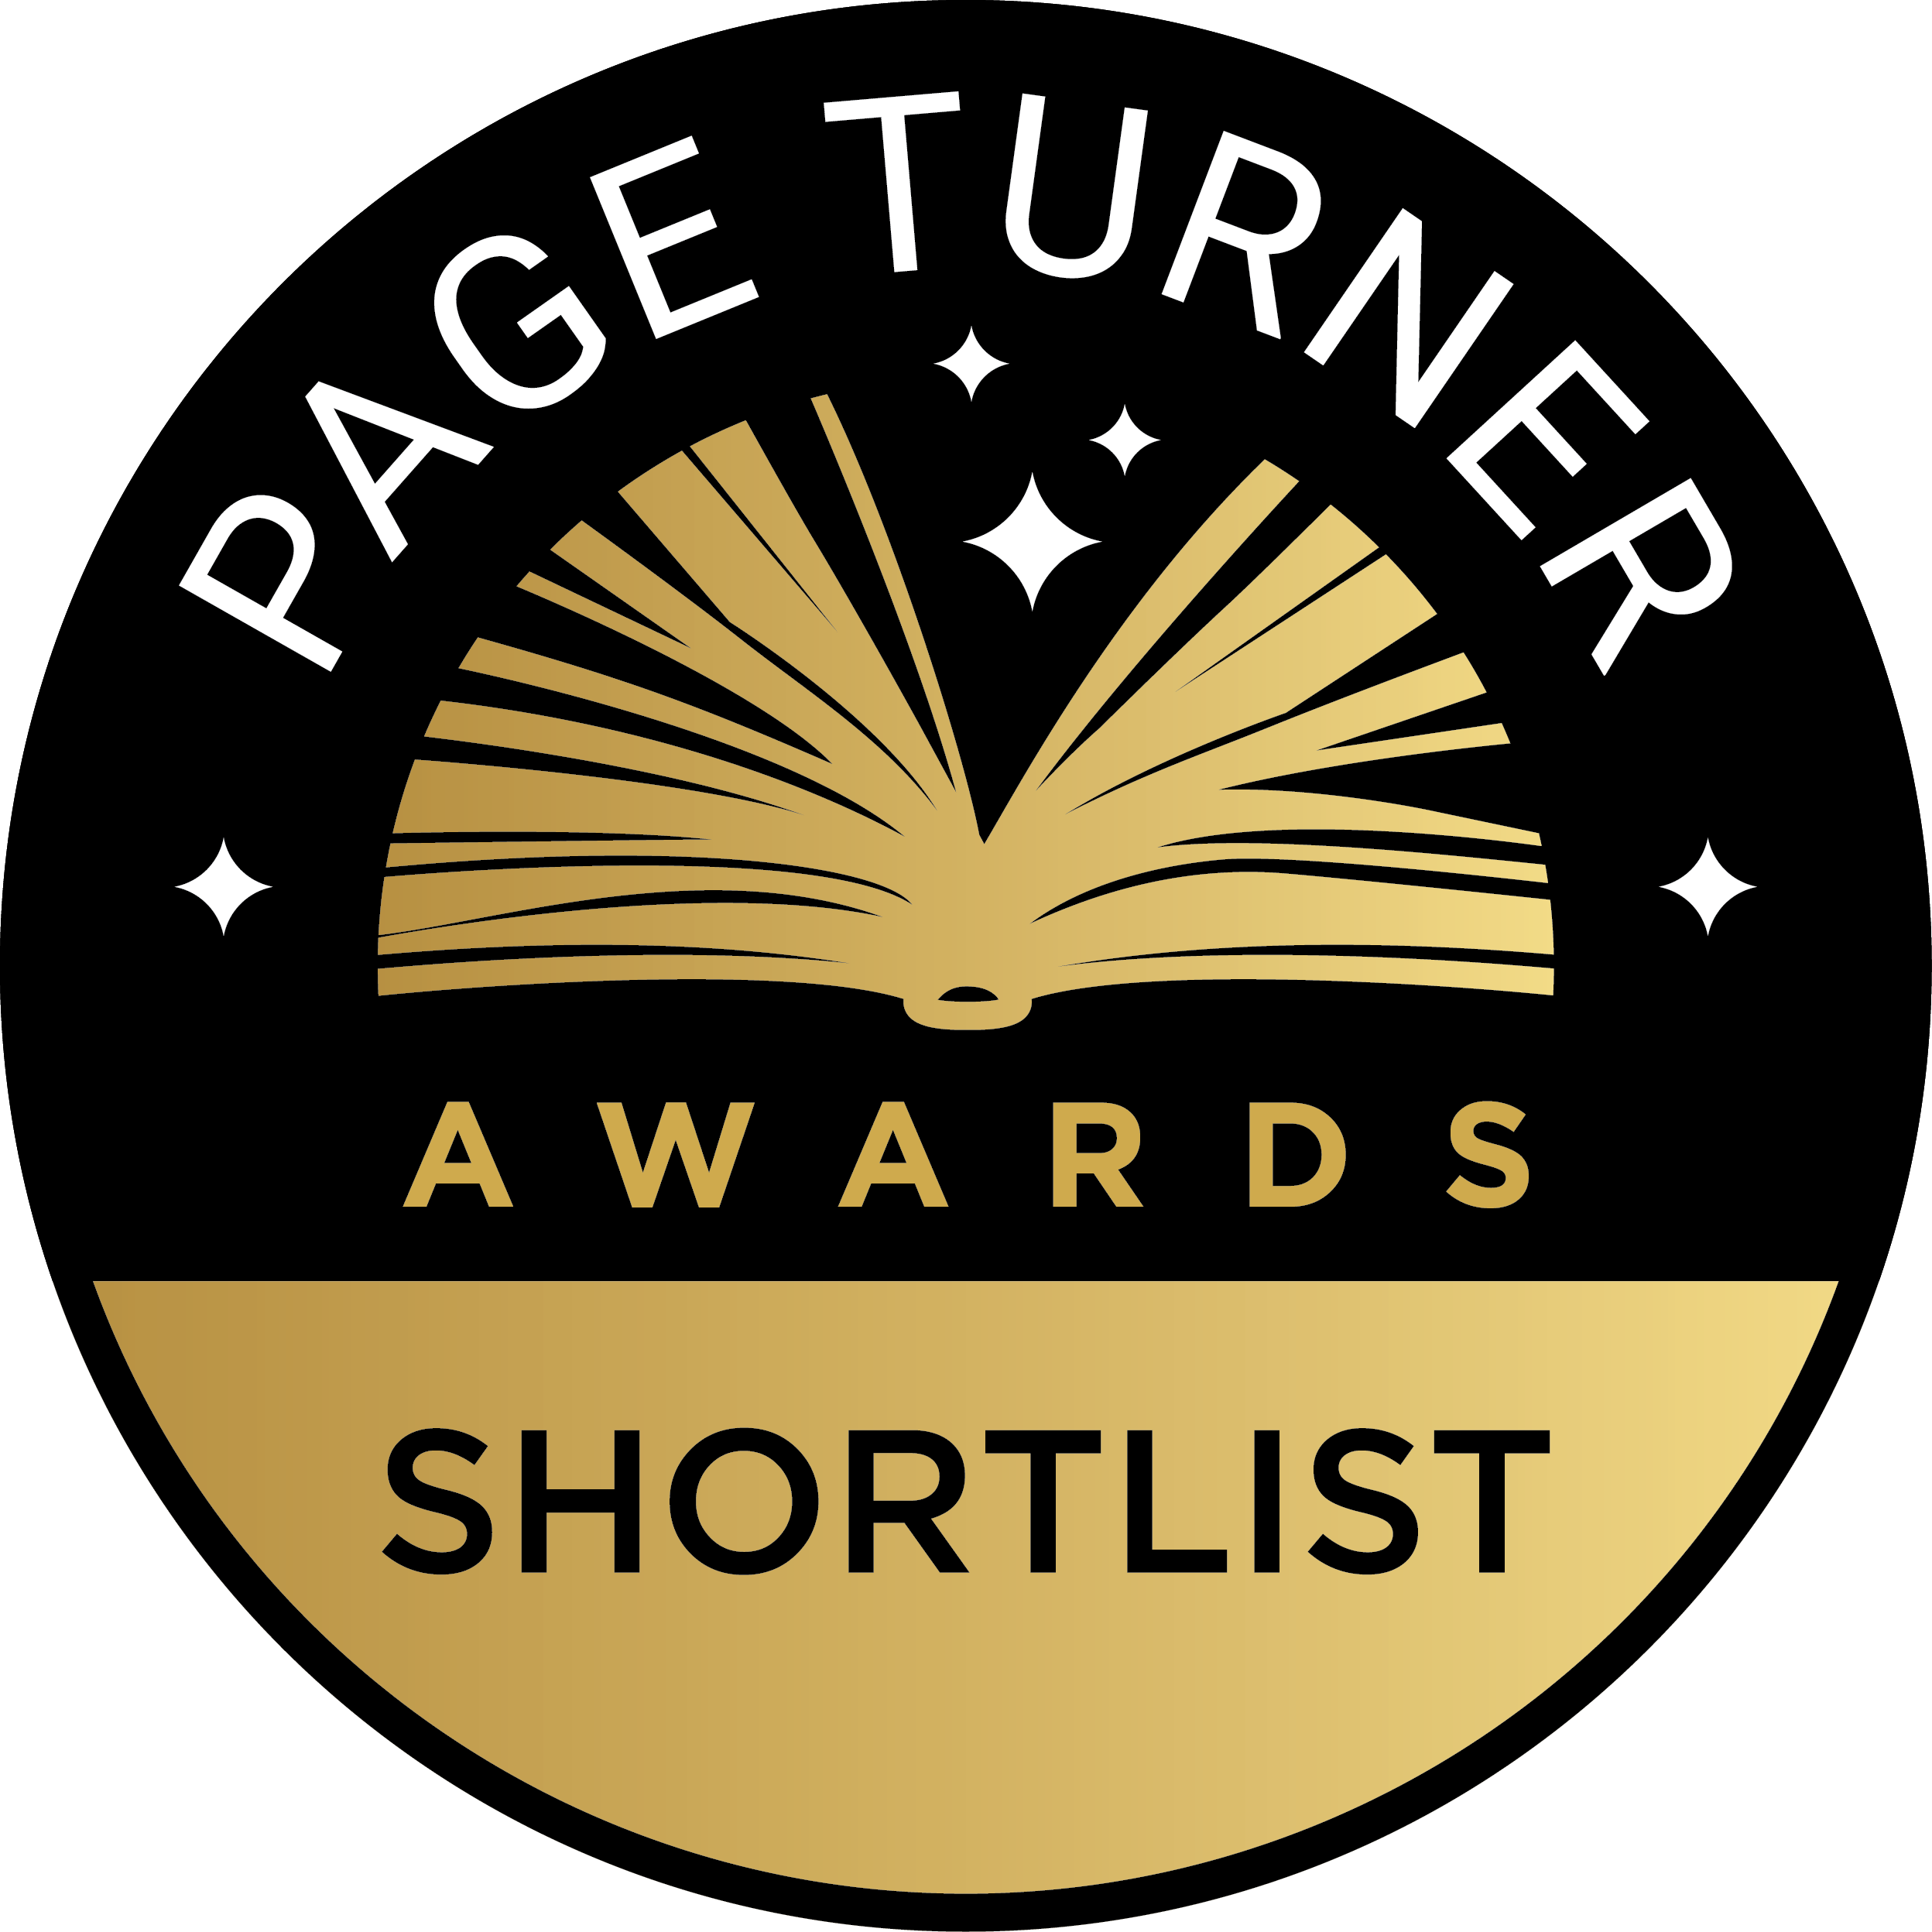 Page Turner Awards Shortlist